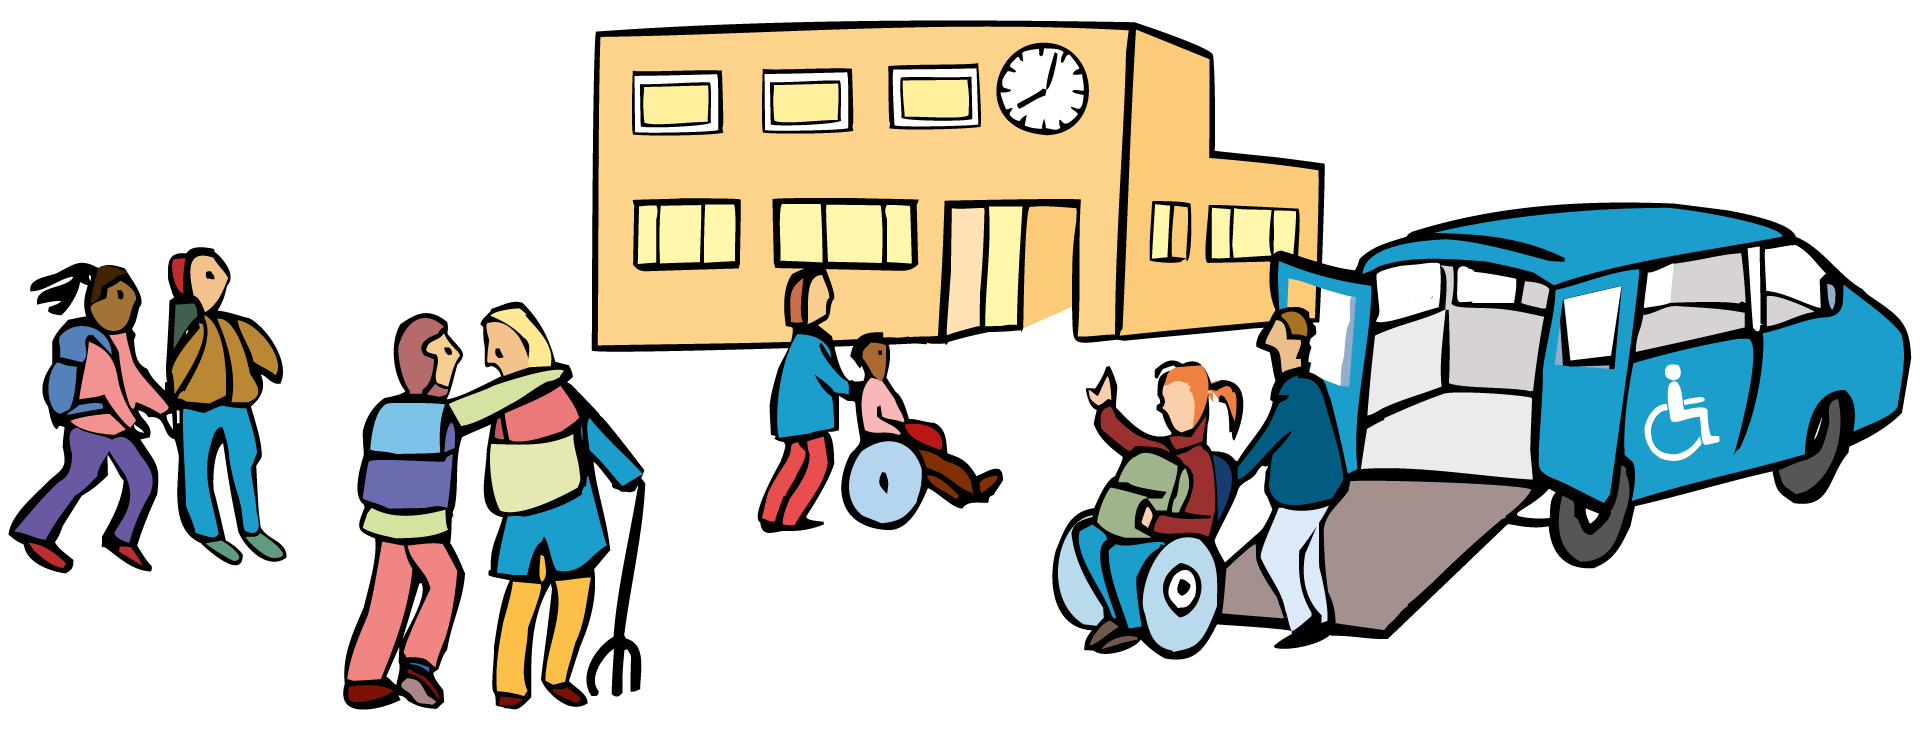 Das ist eine Zeichnung. Die Zeichnung ist bunt. Die Zeichnung ist für den Bereich: Förderschule. Die Zeichnung zeigt Schüler*innen vor einer Schule. Ein Schüler sitzt im Rollstuhl. Eine Schüler-in hat eine Geh-Hilfe.